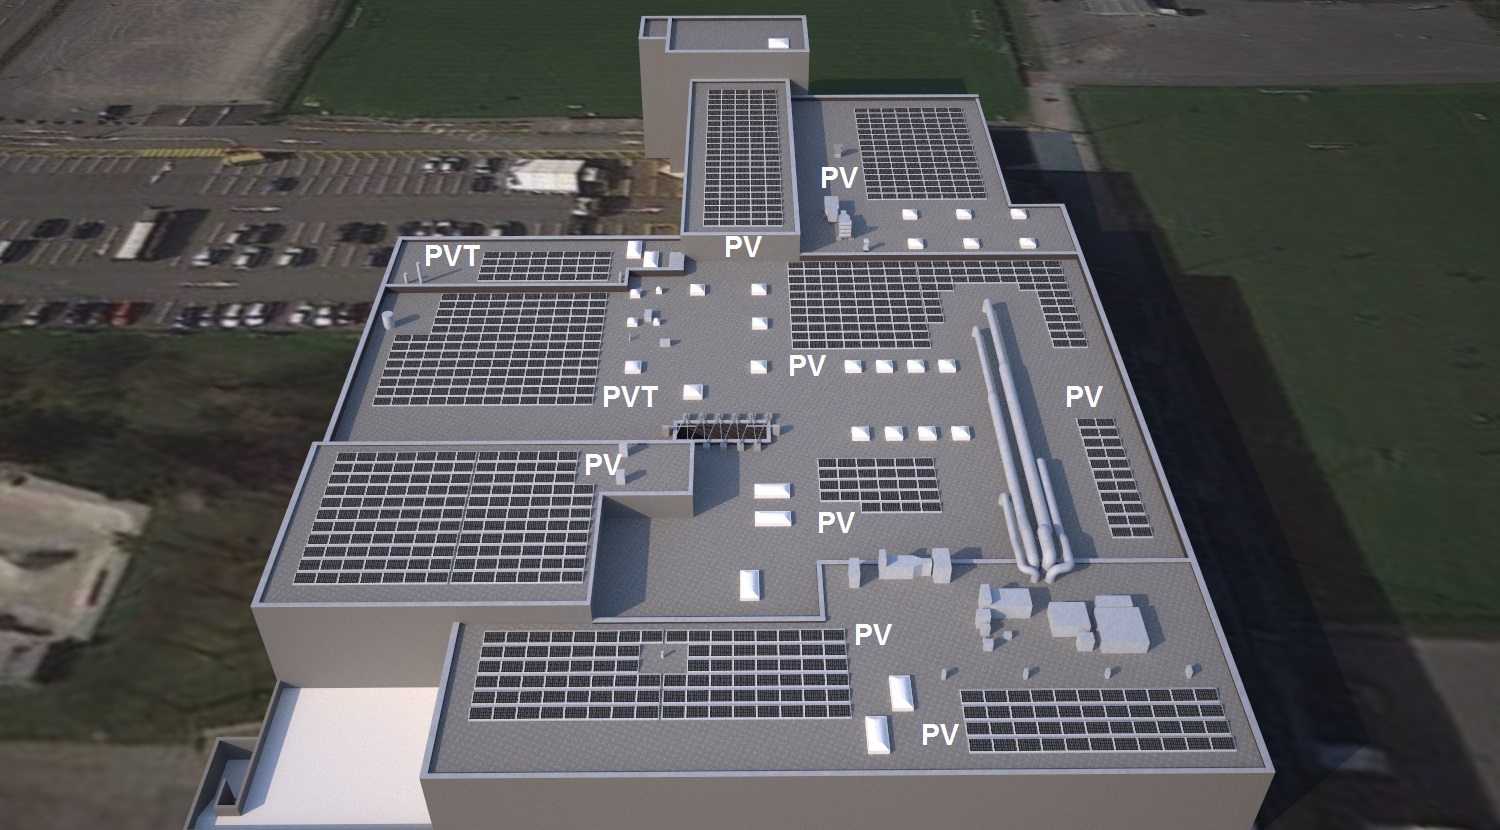 Solarkraftwerk auf der linth-arena sgu in dem von der Fachgruppe Solartechnik erstellten 3D-Modell